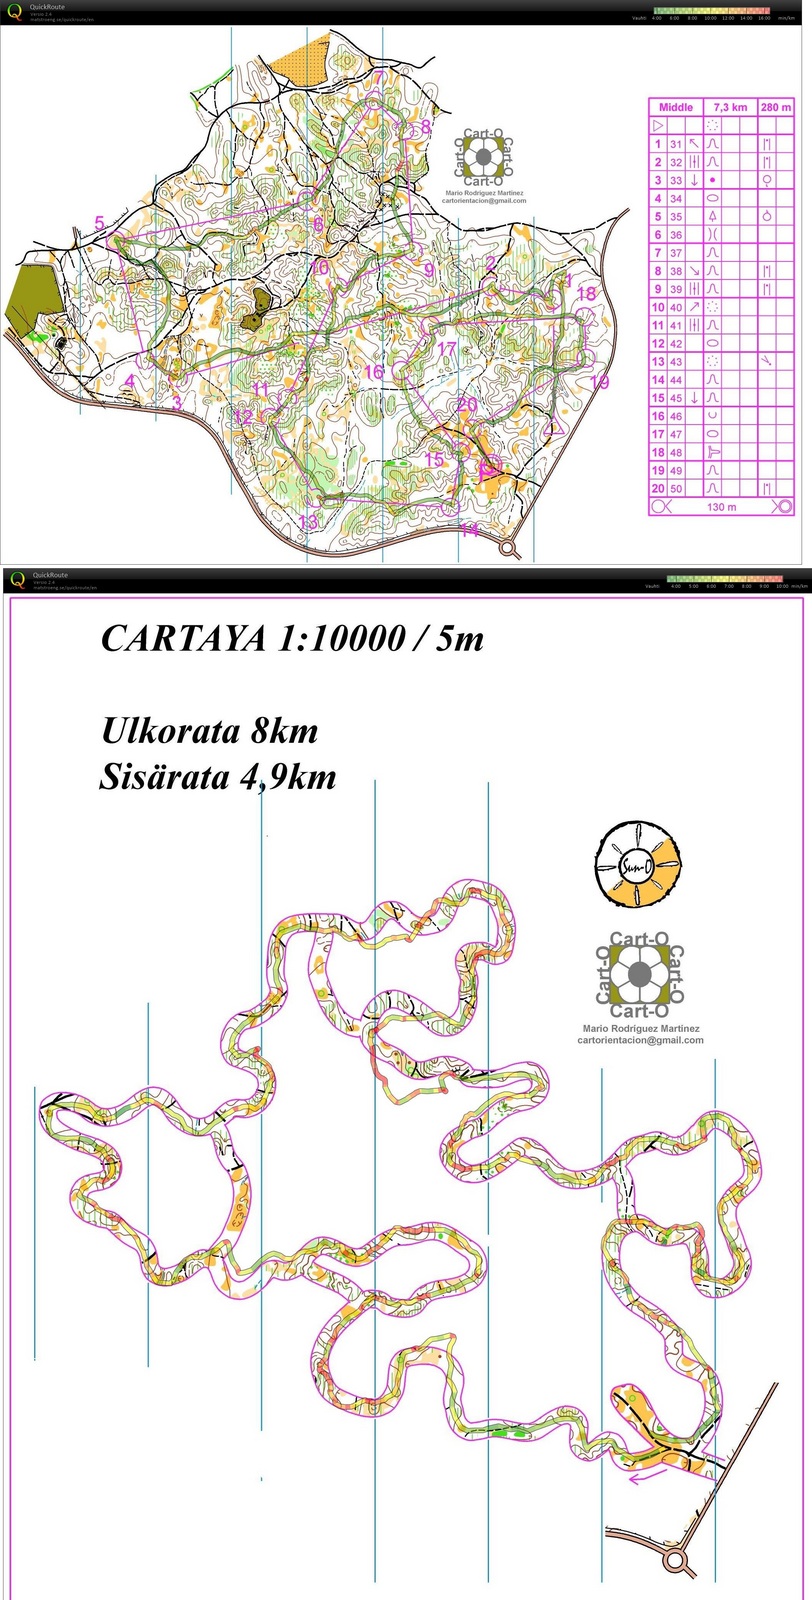 Cartayan "keskimatka" ja korridori (pitkä suunnistus) (19/02/2014)